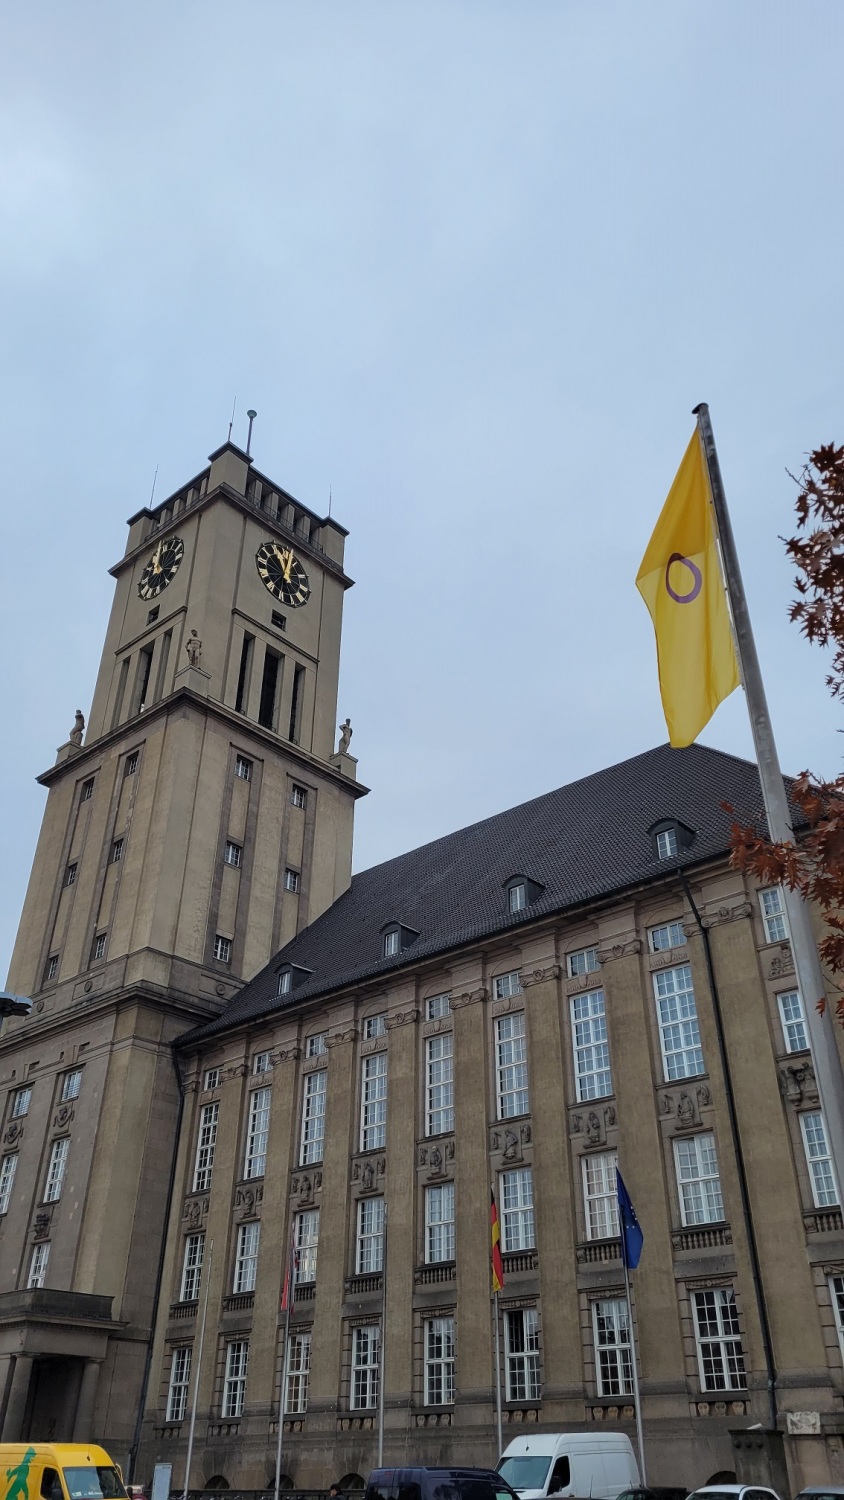 Vor einem großen Gebäude mit Uhrenturm weht eine gelbe Flagge mit lila Kreis an einem Fahnenmast.